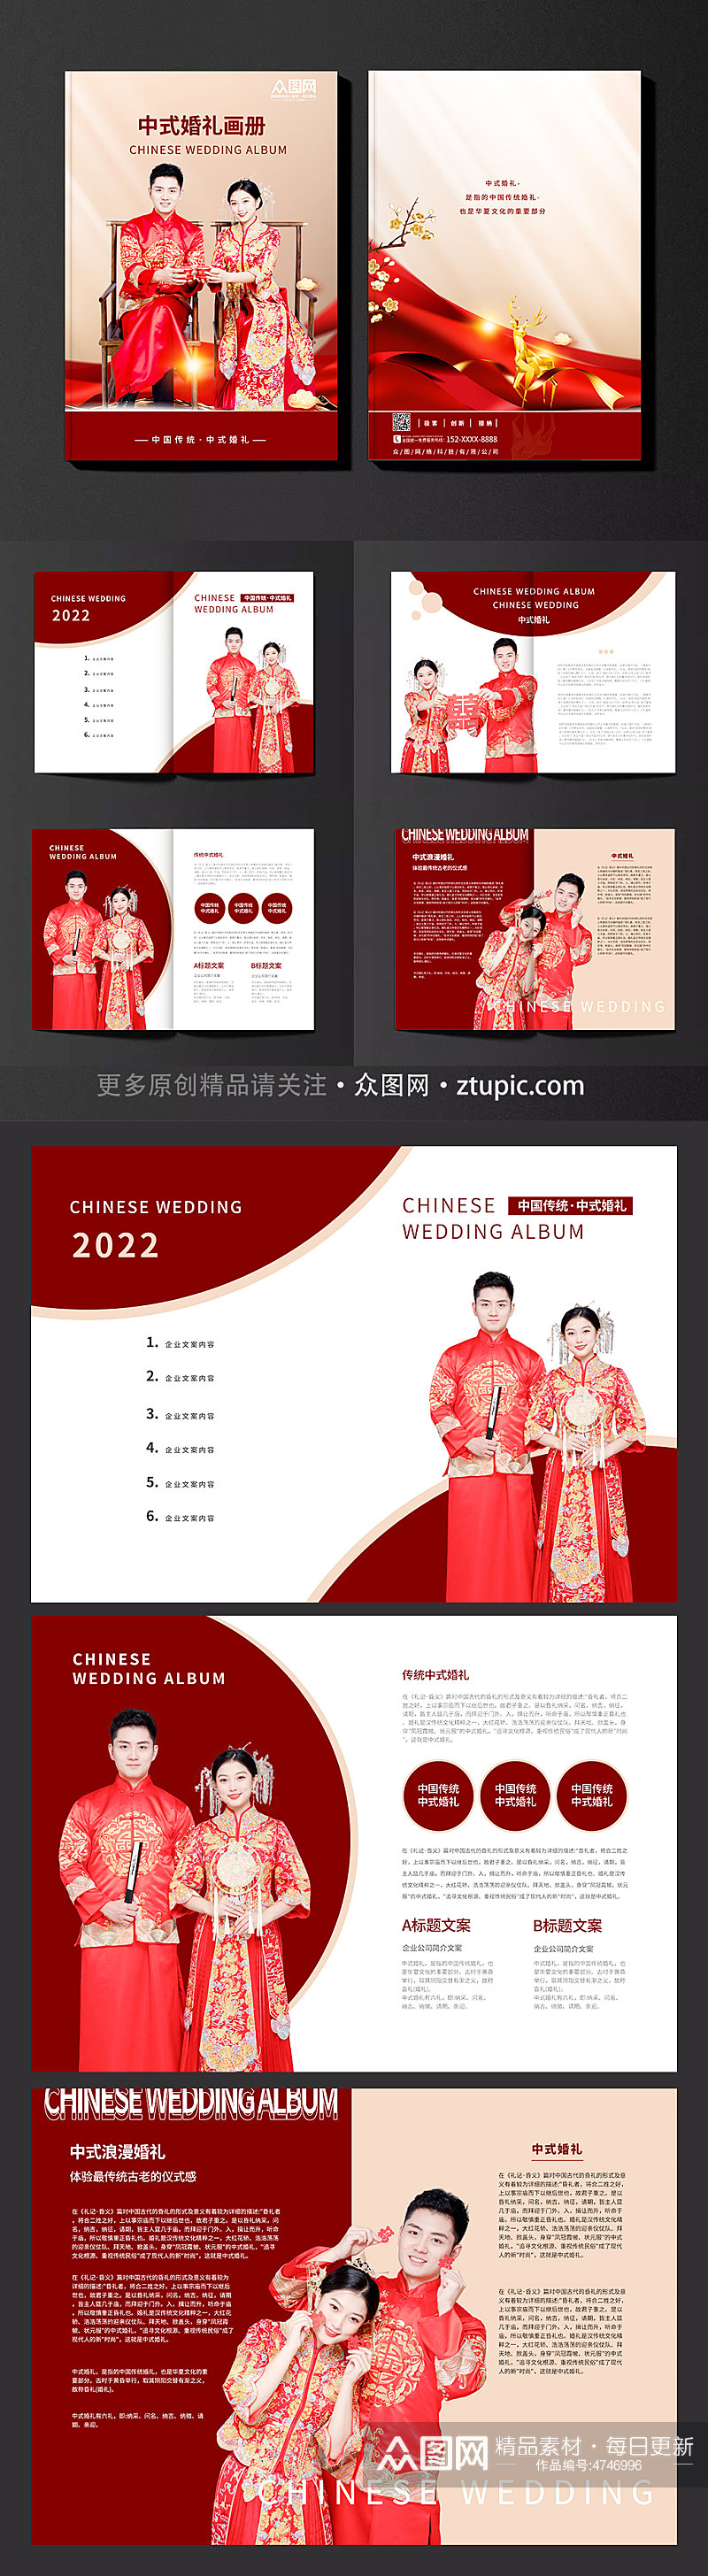 红色大气简约中式婚礼画册素材